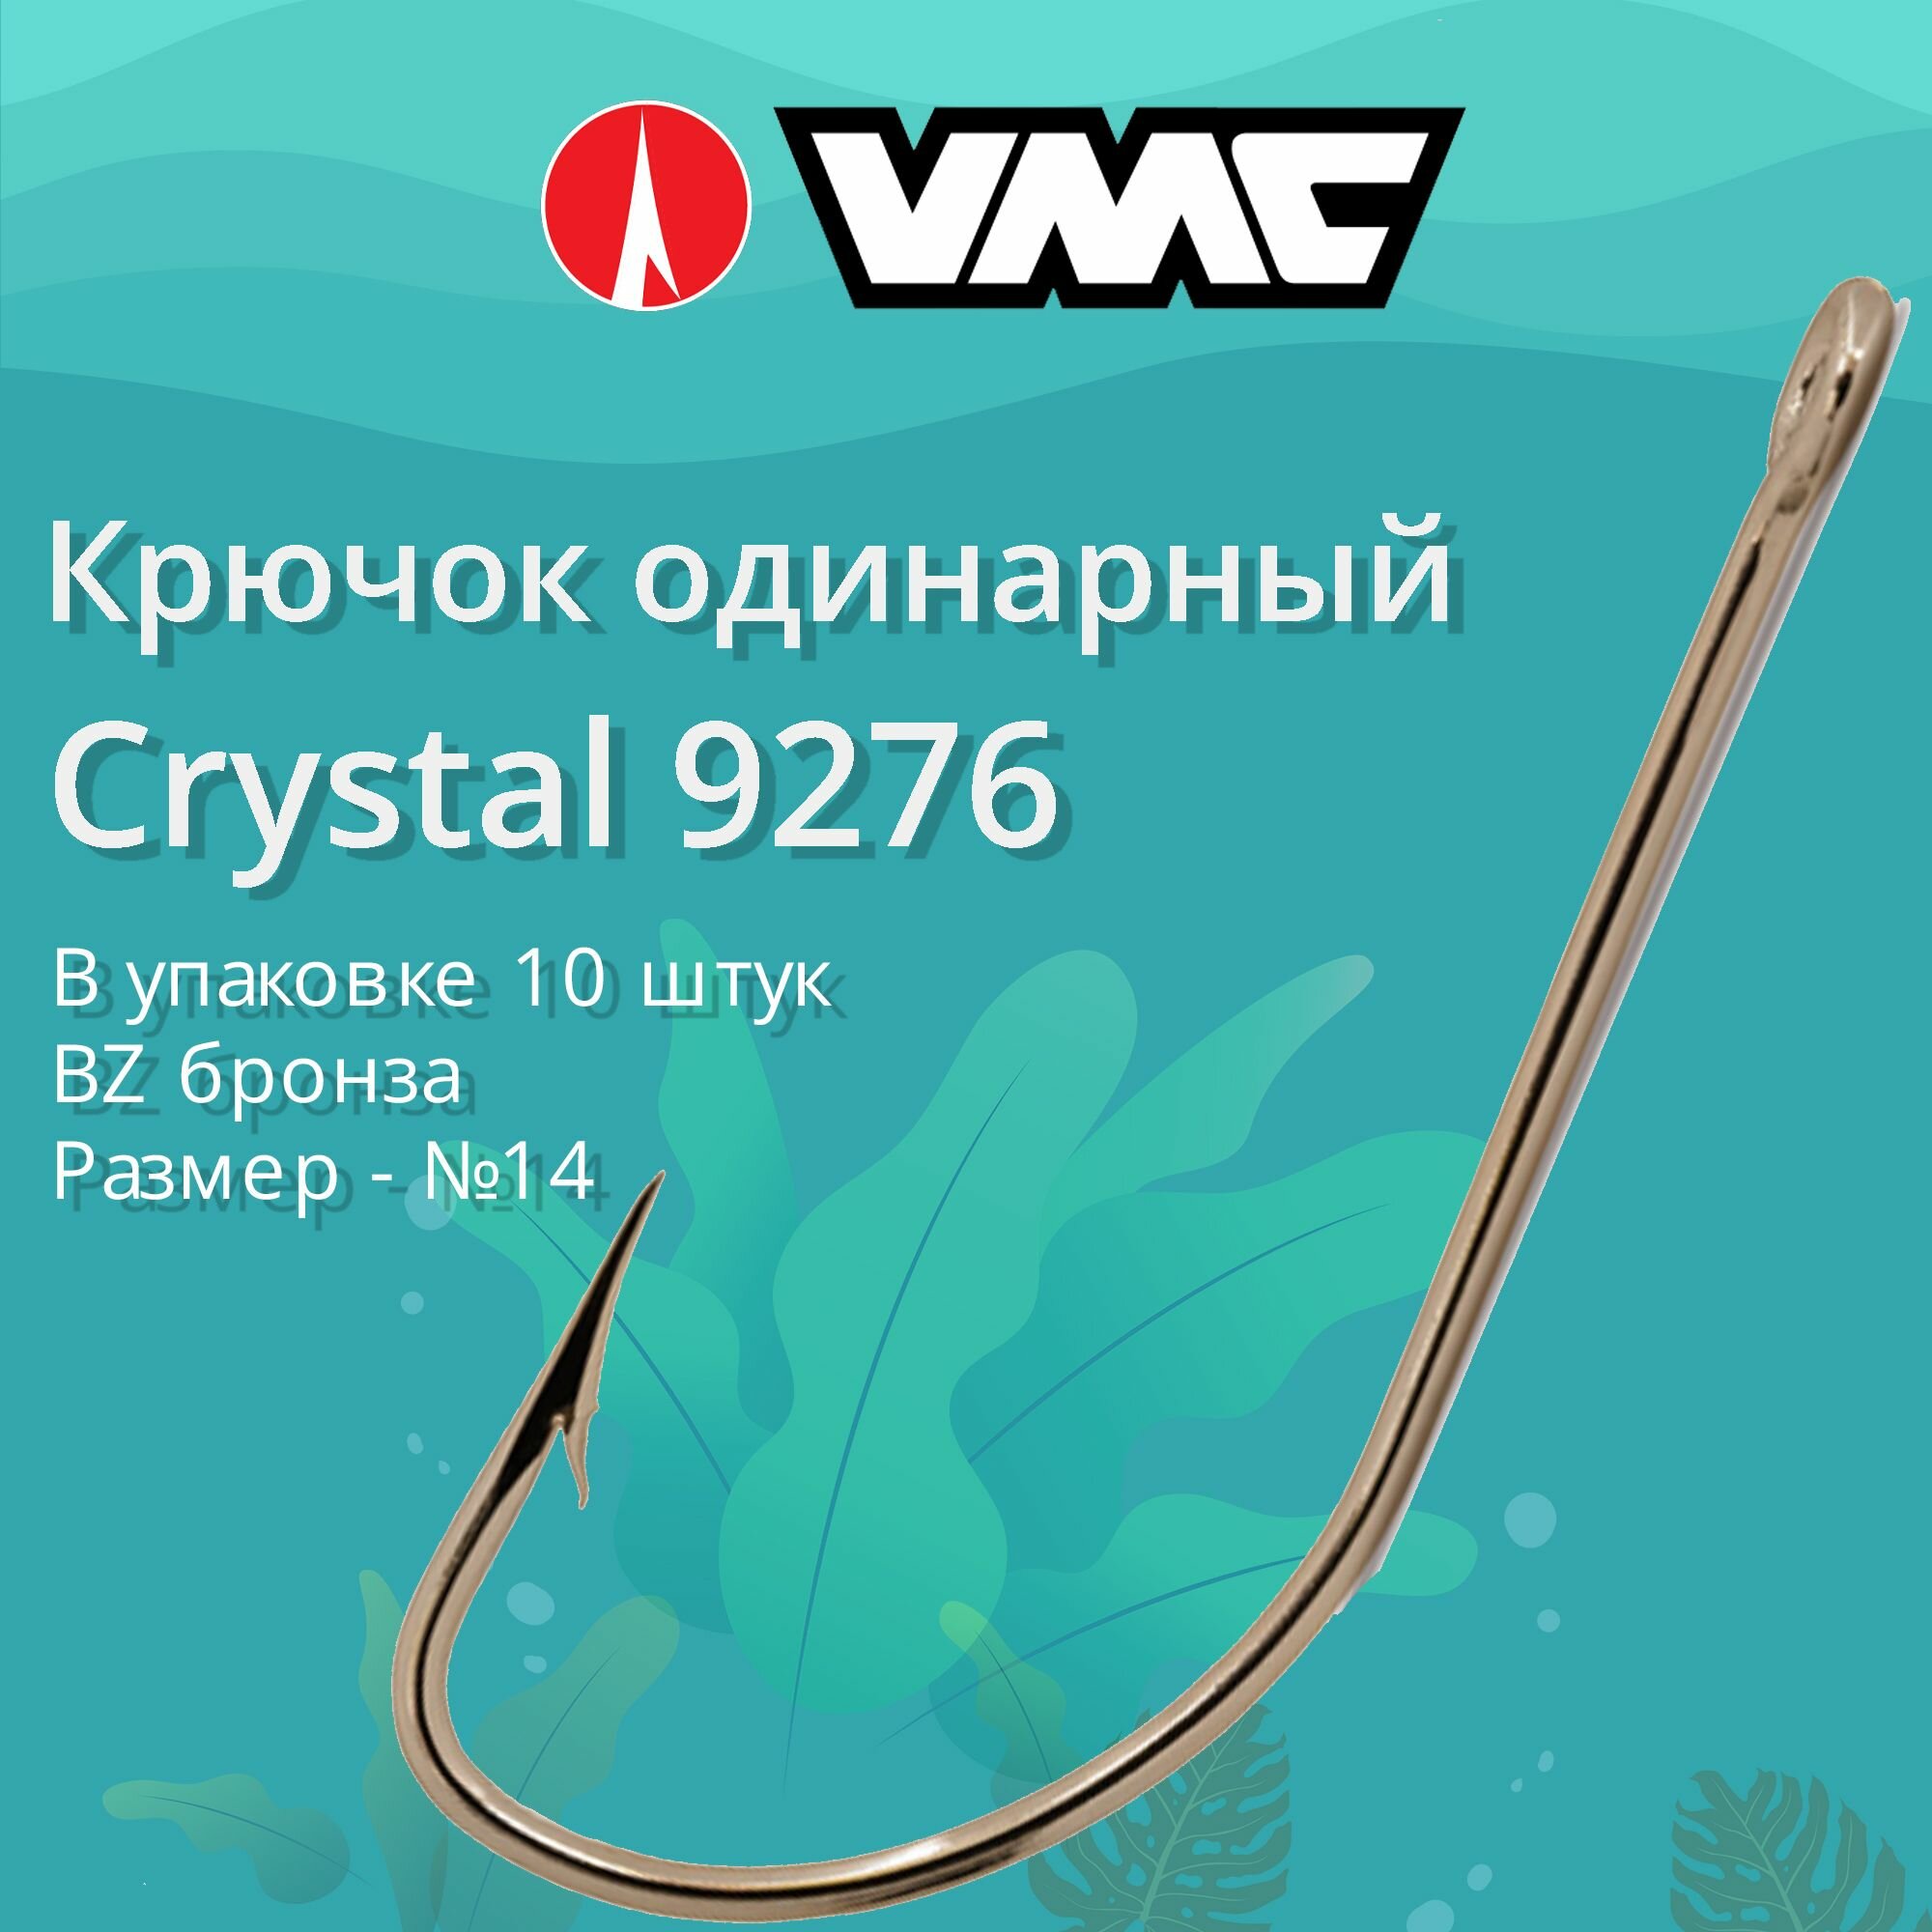 Крючки для рыбалки (одинарный) VMC Crystal 9276 BZ (бронза) №14 упаковка 10 штук